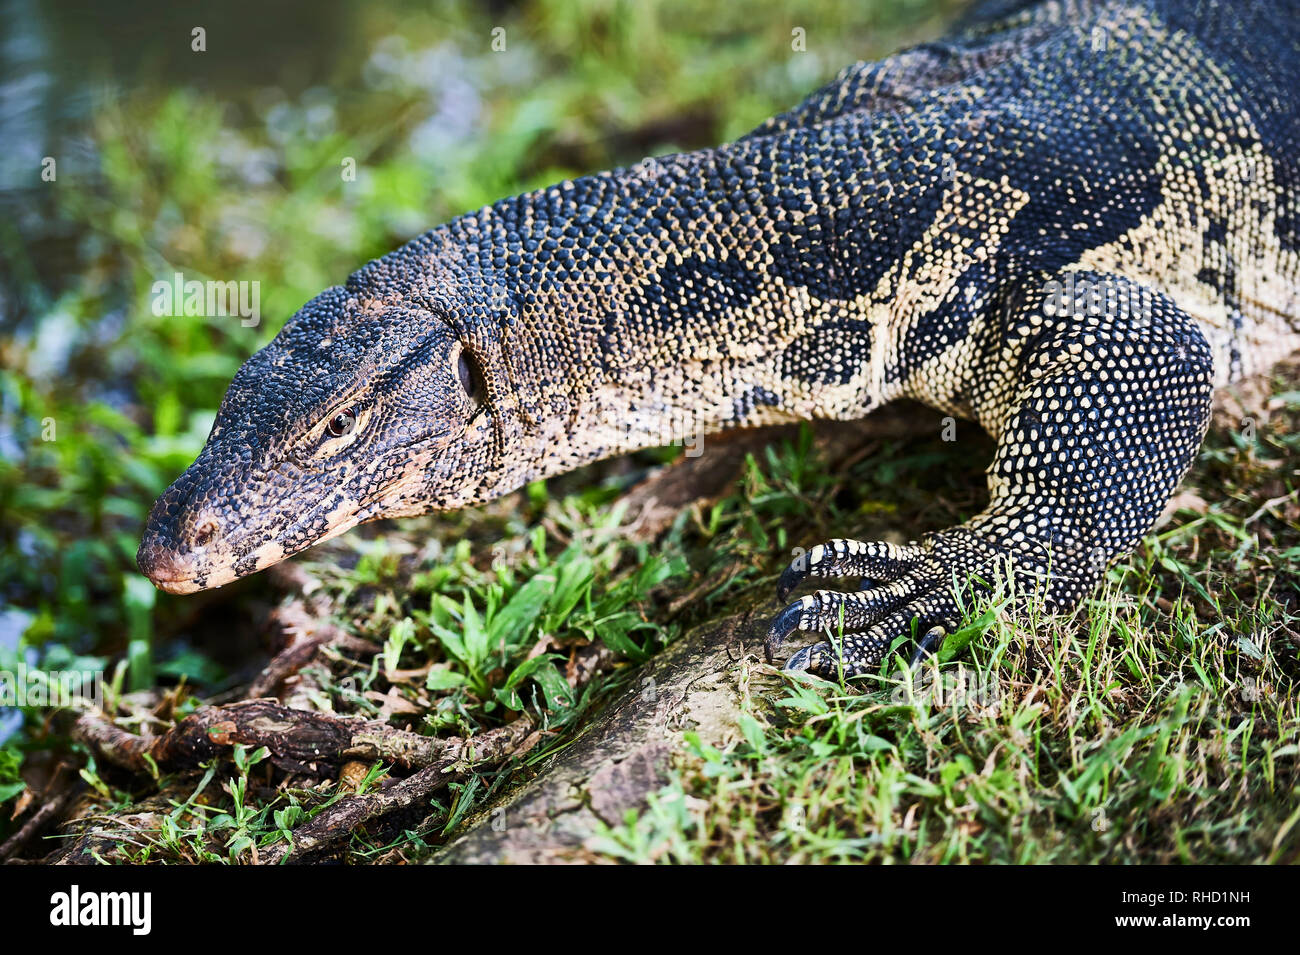 Mezza ritratto di un vecchio monitor lizard reptile camminando su erba a Lumpini Park a Bangkok, in Thailandia Foto Stock